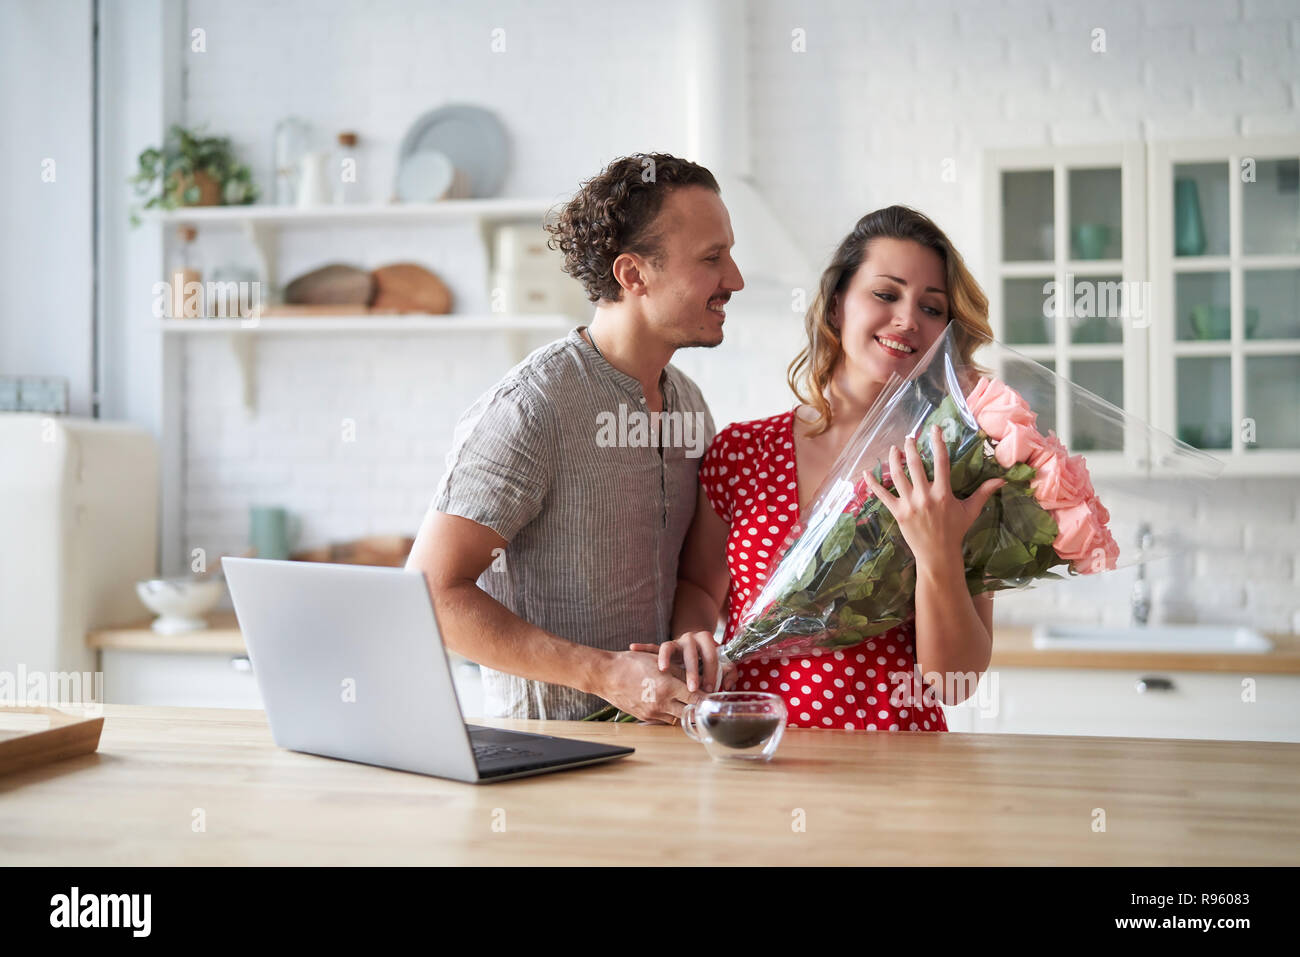 Lassen Sie sich überraschen. Wunderschönes romantisches Paar in der Küche. Junge präsentiert man Blumen zu seinen Geliebten. Das Gefühl von Glück. Stockfoto